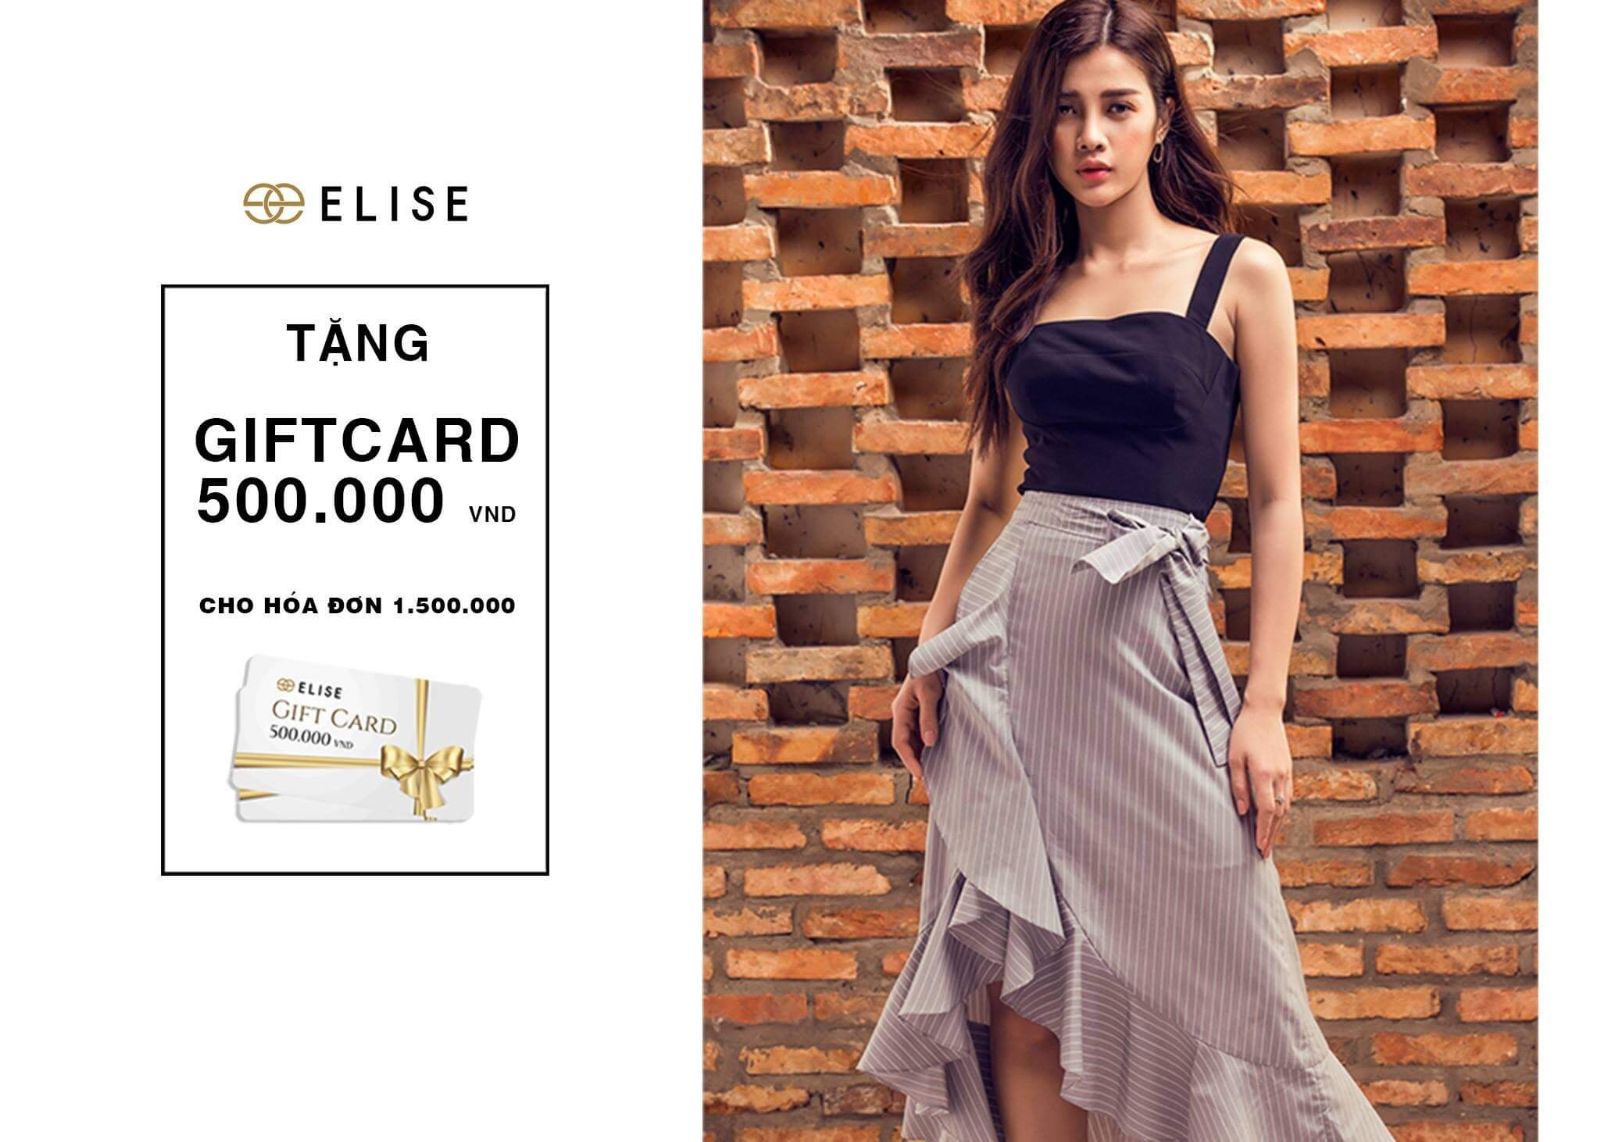 Elise tung ra các chương trình ưu đãi phiếu giảm giá hot nhất thị trường thời trang